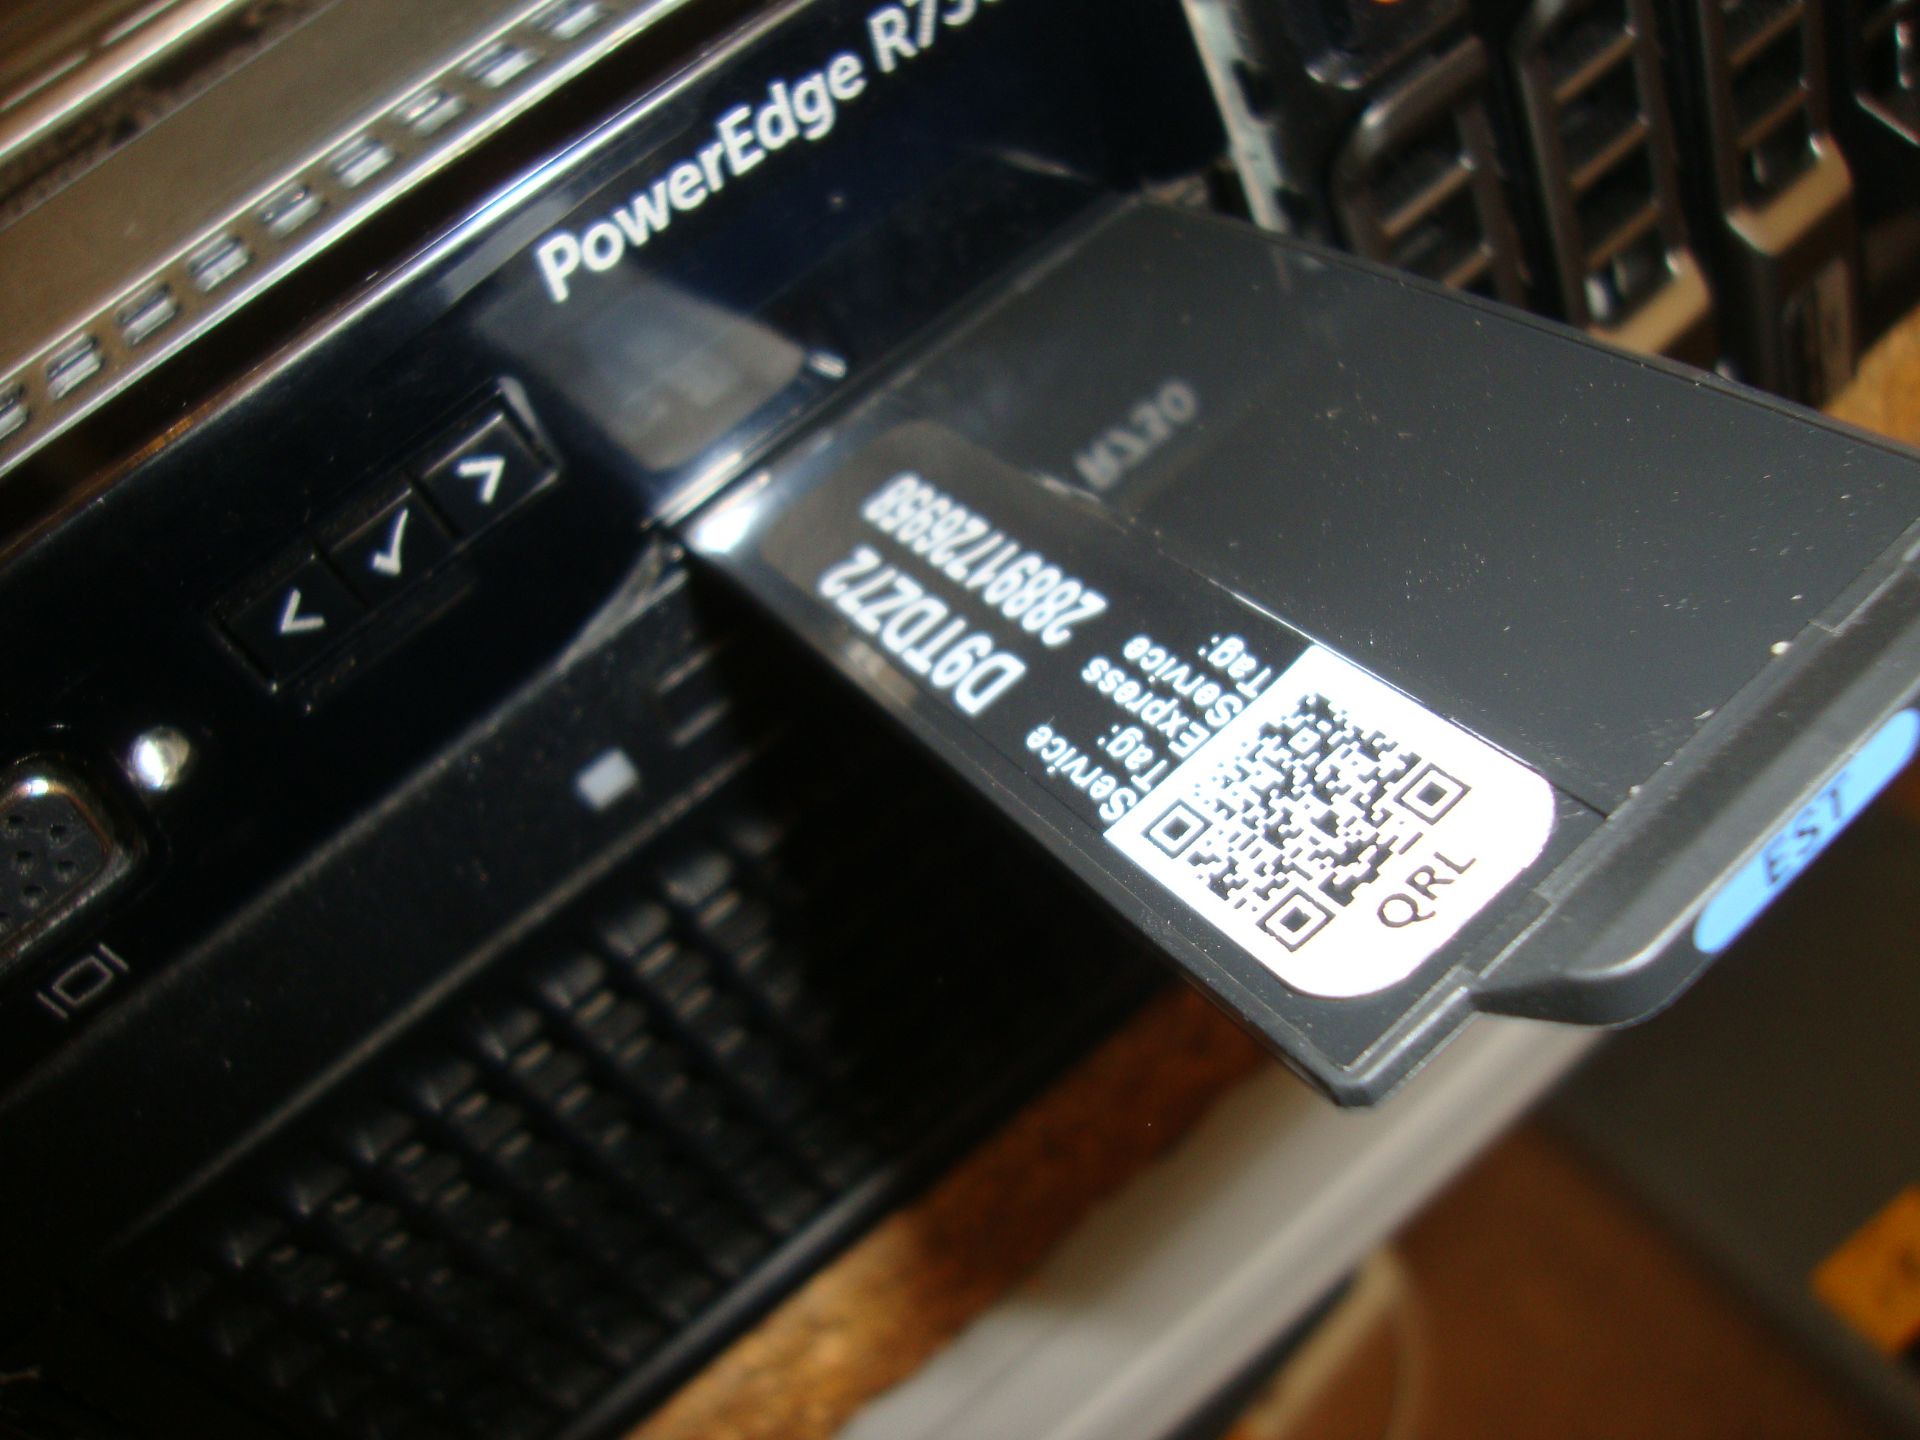 Dell PowerEdge model R730 server with twin Xeon 6 Core E5-2609 V3 1.9 GHz processors, 96Gb RAM, - Bild 3 aus 15